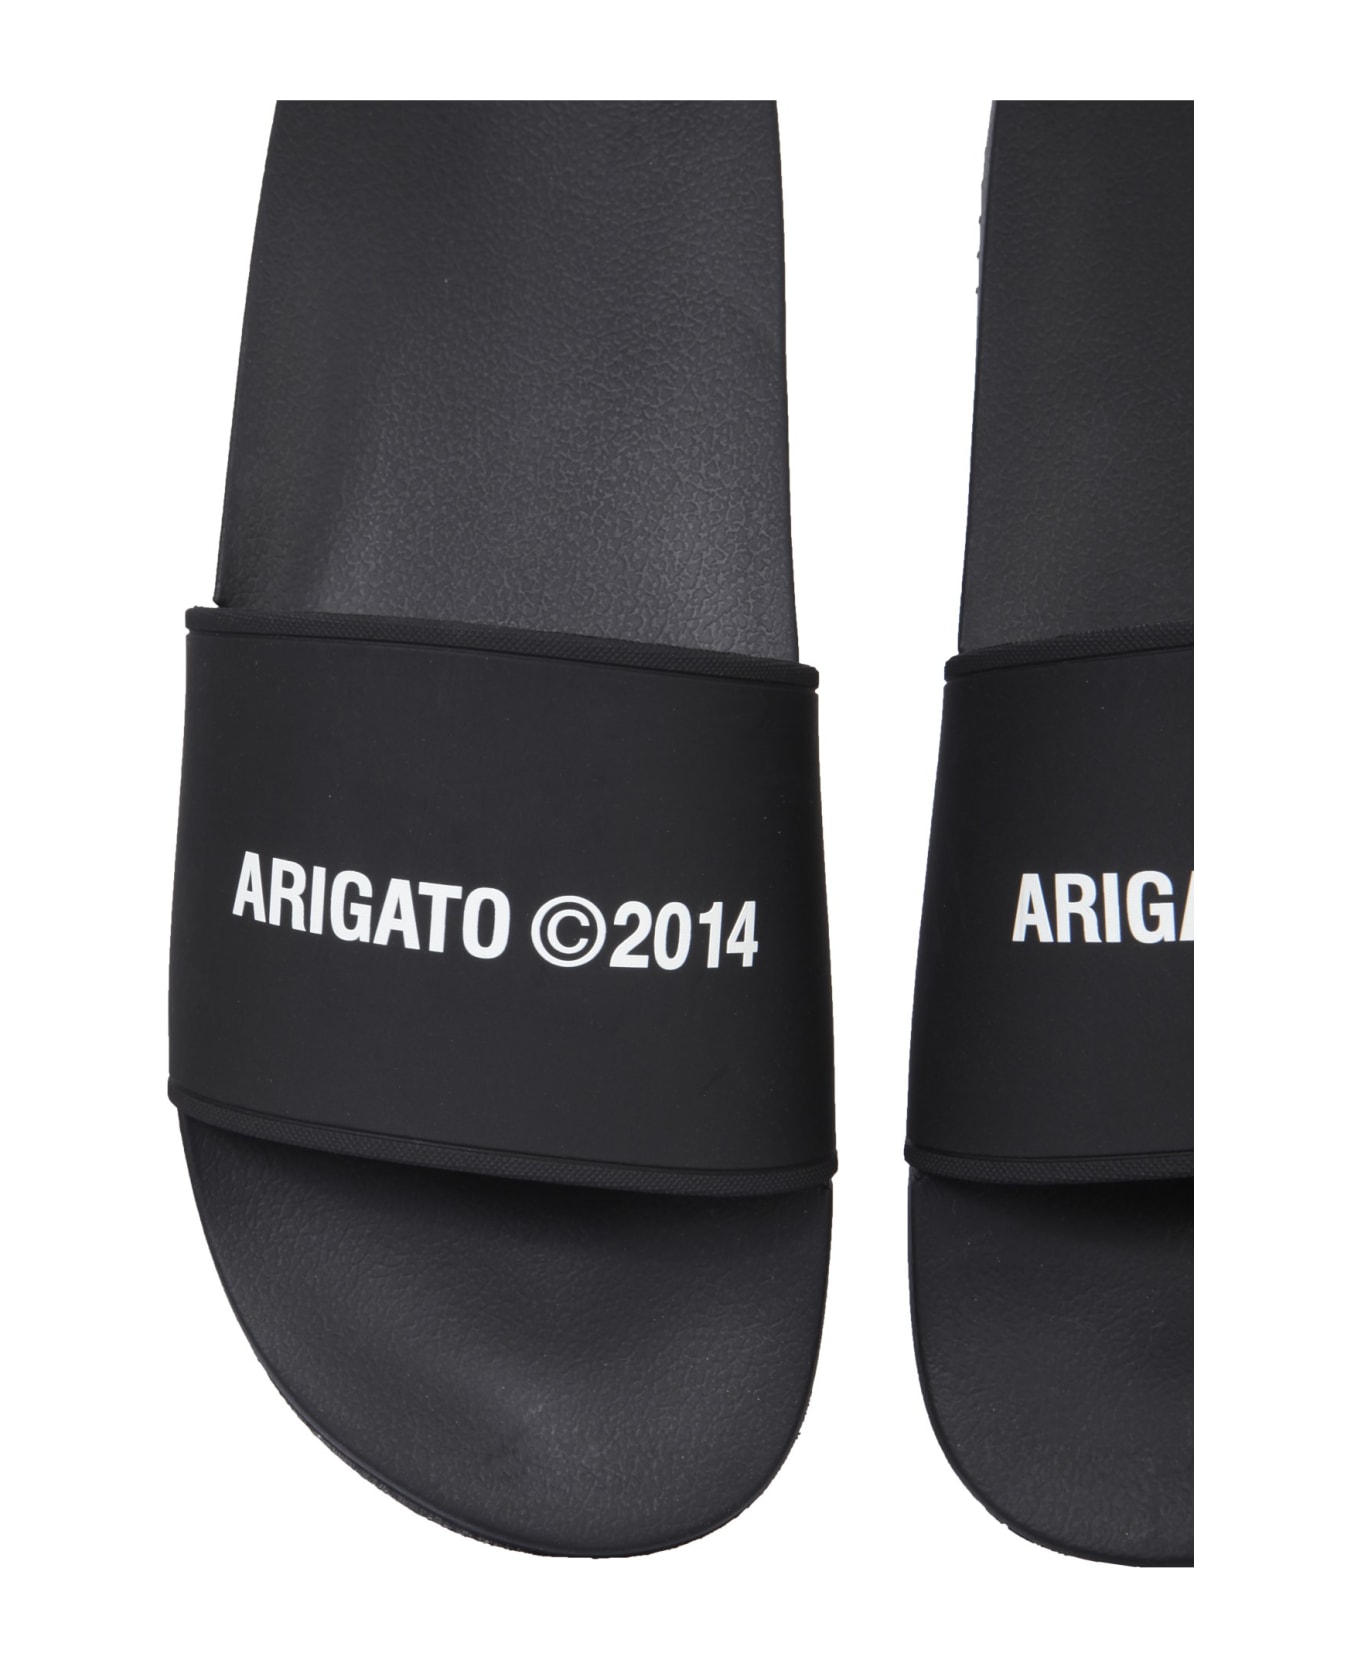 Axel Arigato Rubber Slide Sandals - NERO